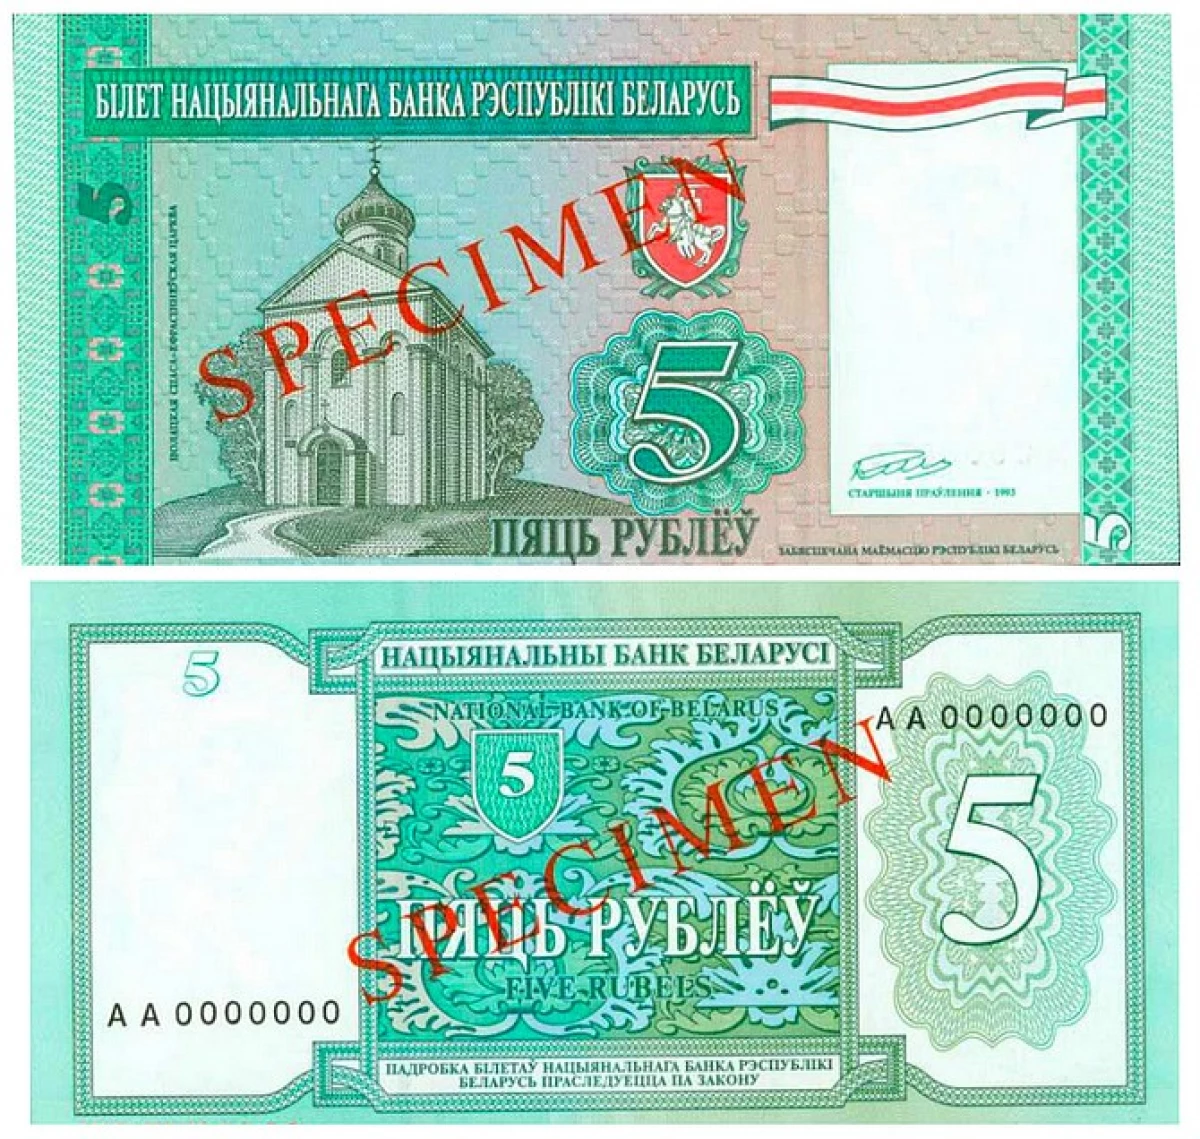 白俄罗斯26年历史上的现金账单纪事 7938_9